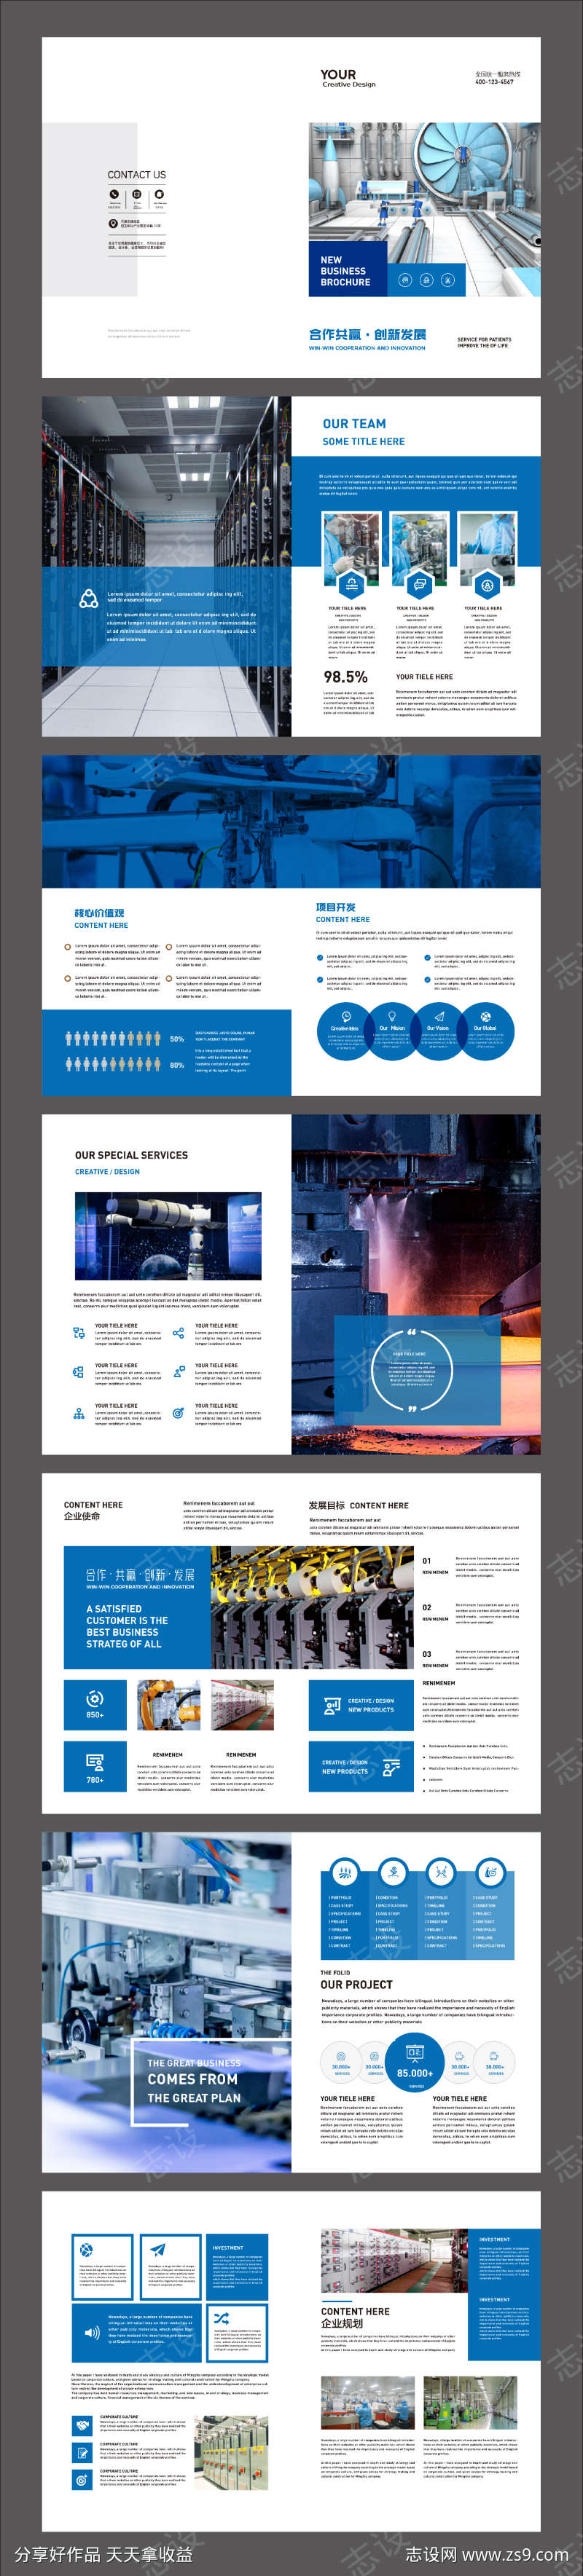 蓝色企业宣传册自动化工厂画册